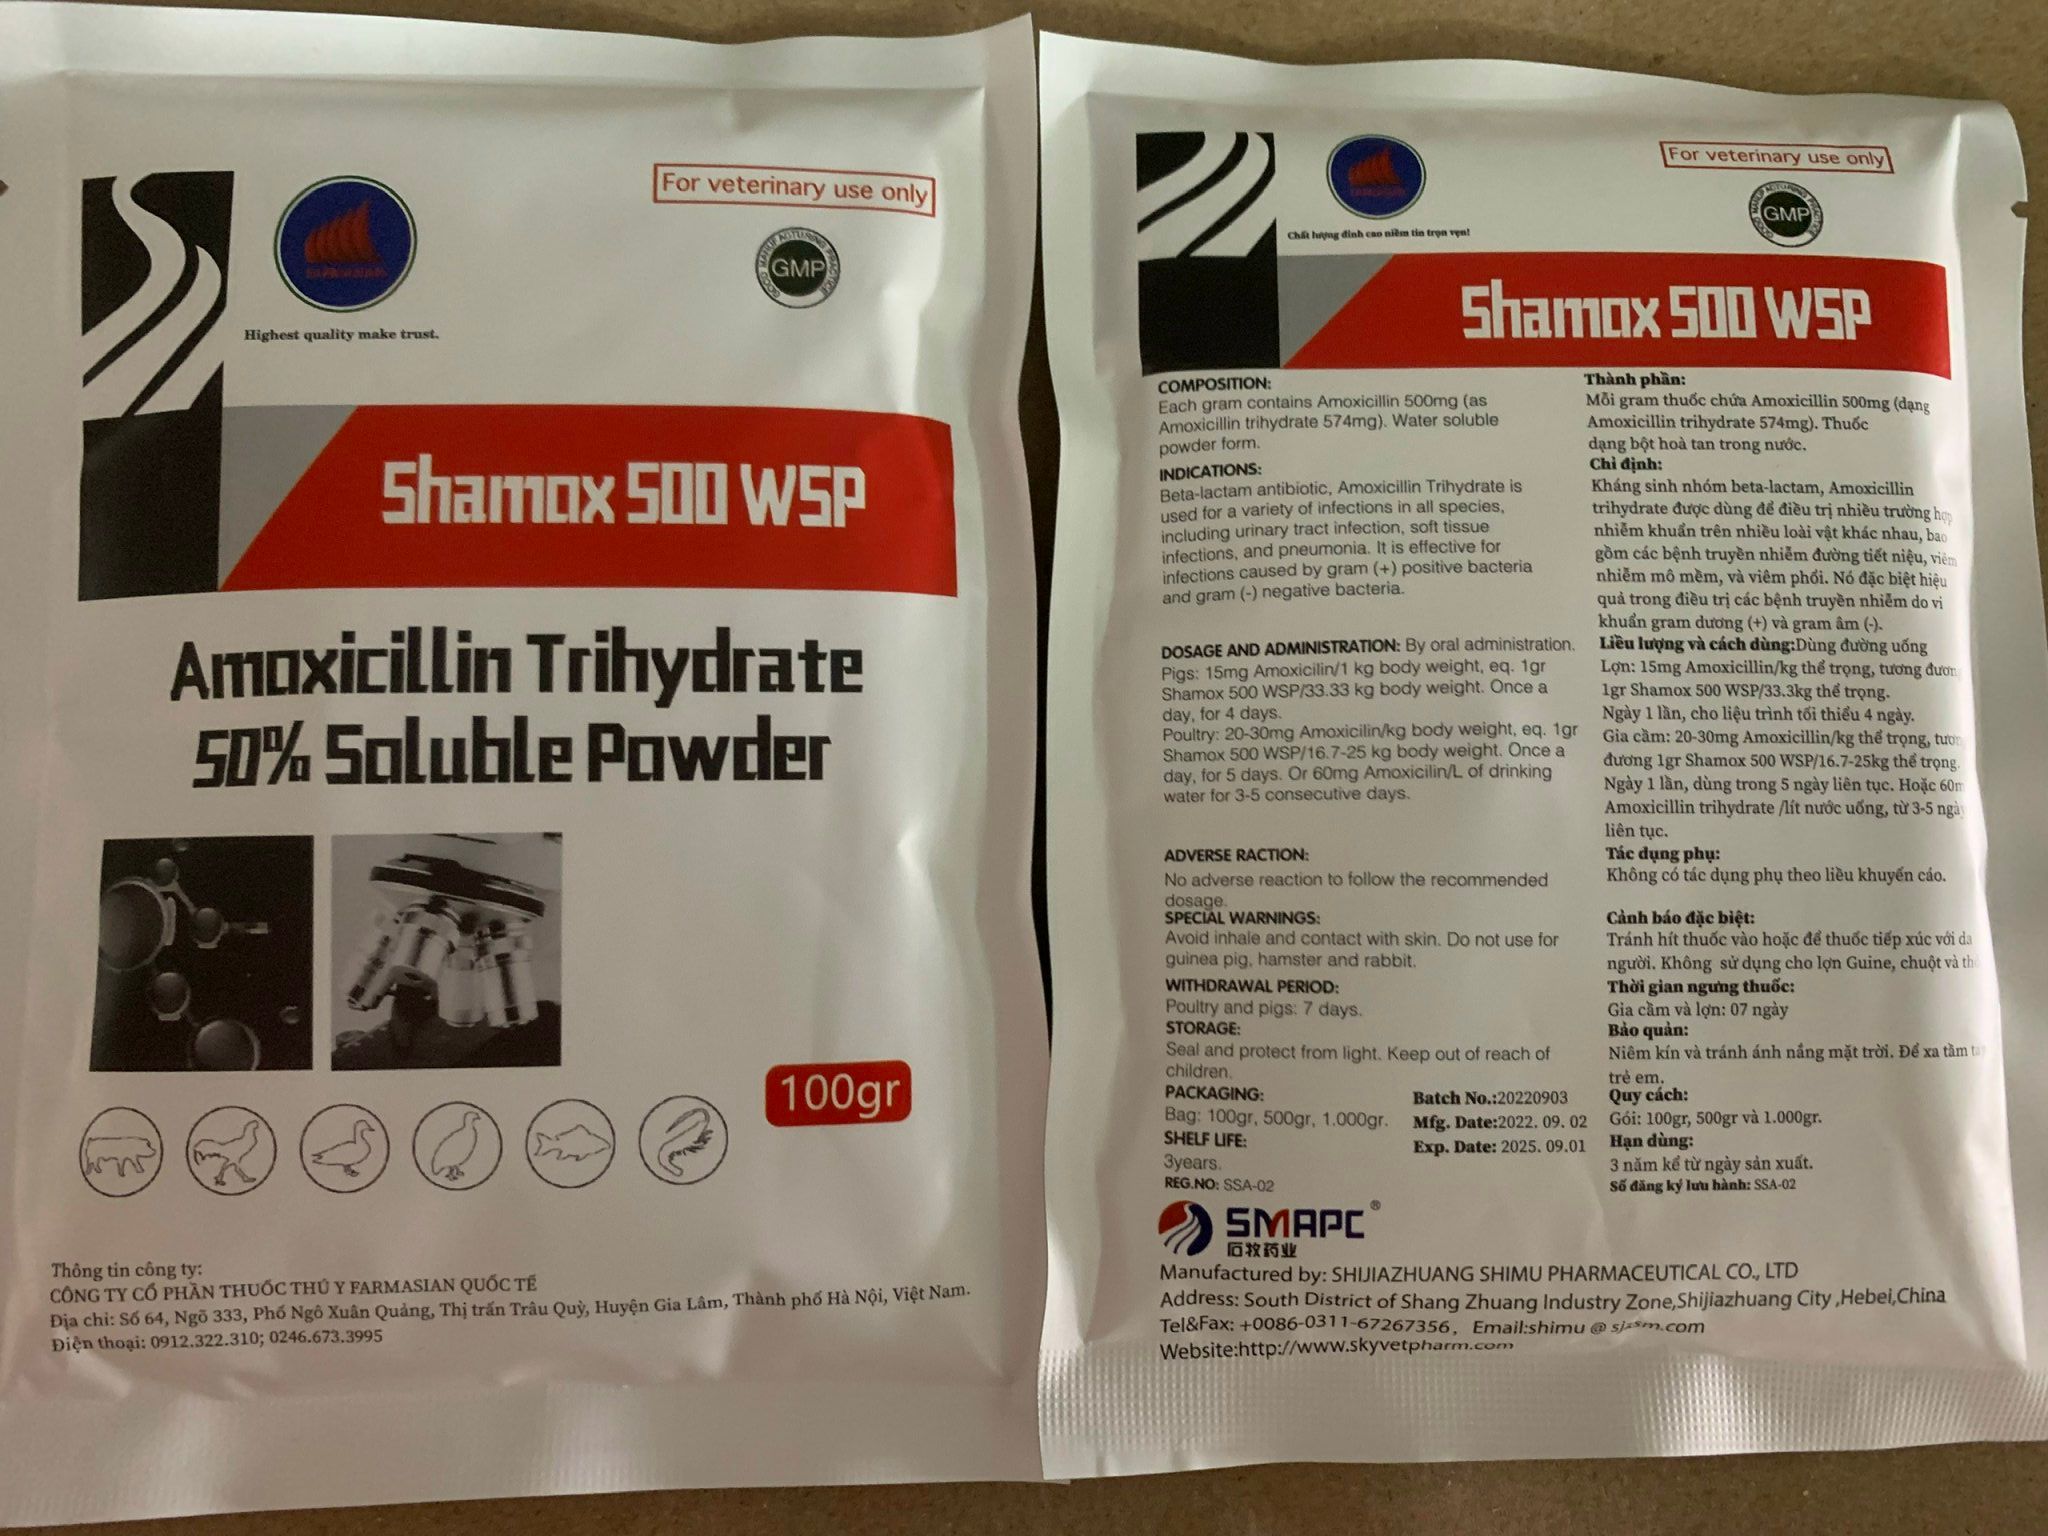 Shamox 500 WSP - 100G